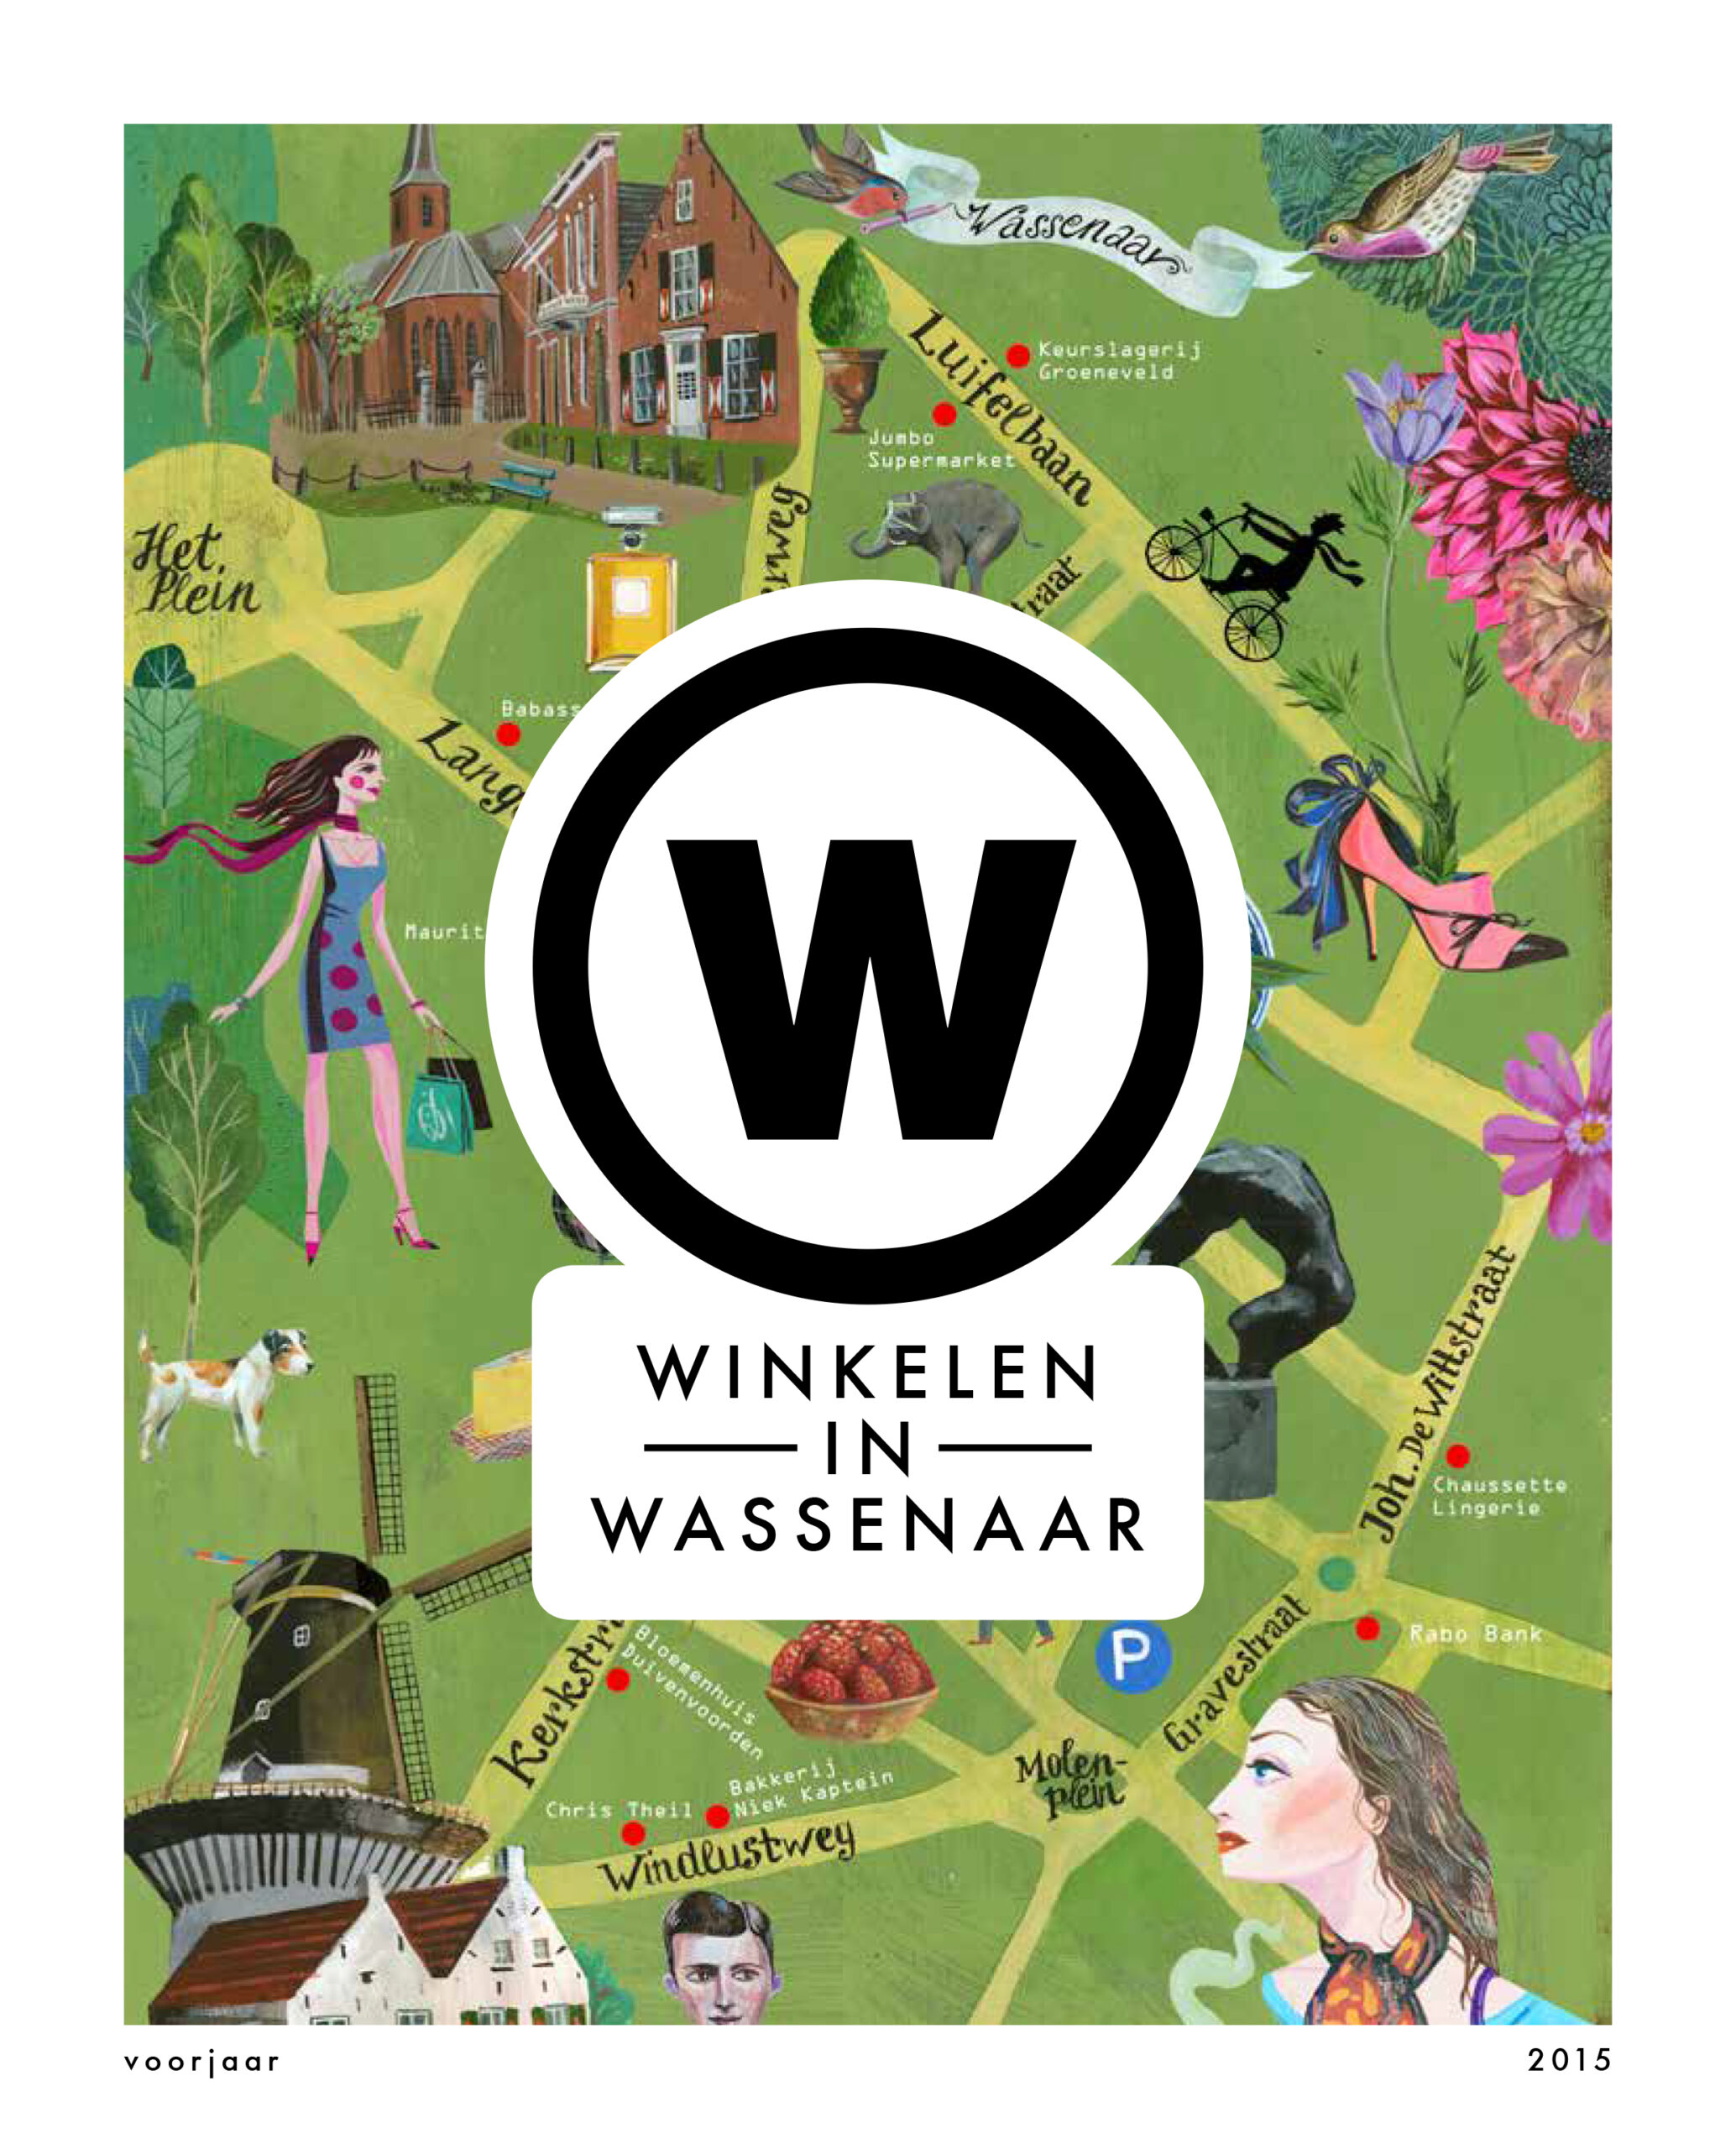 Winkelen in Wassenaar – Voorjaar 2015